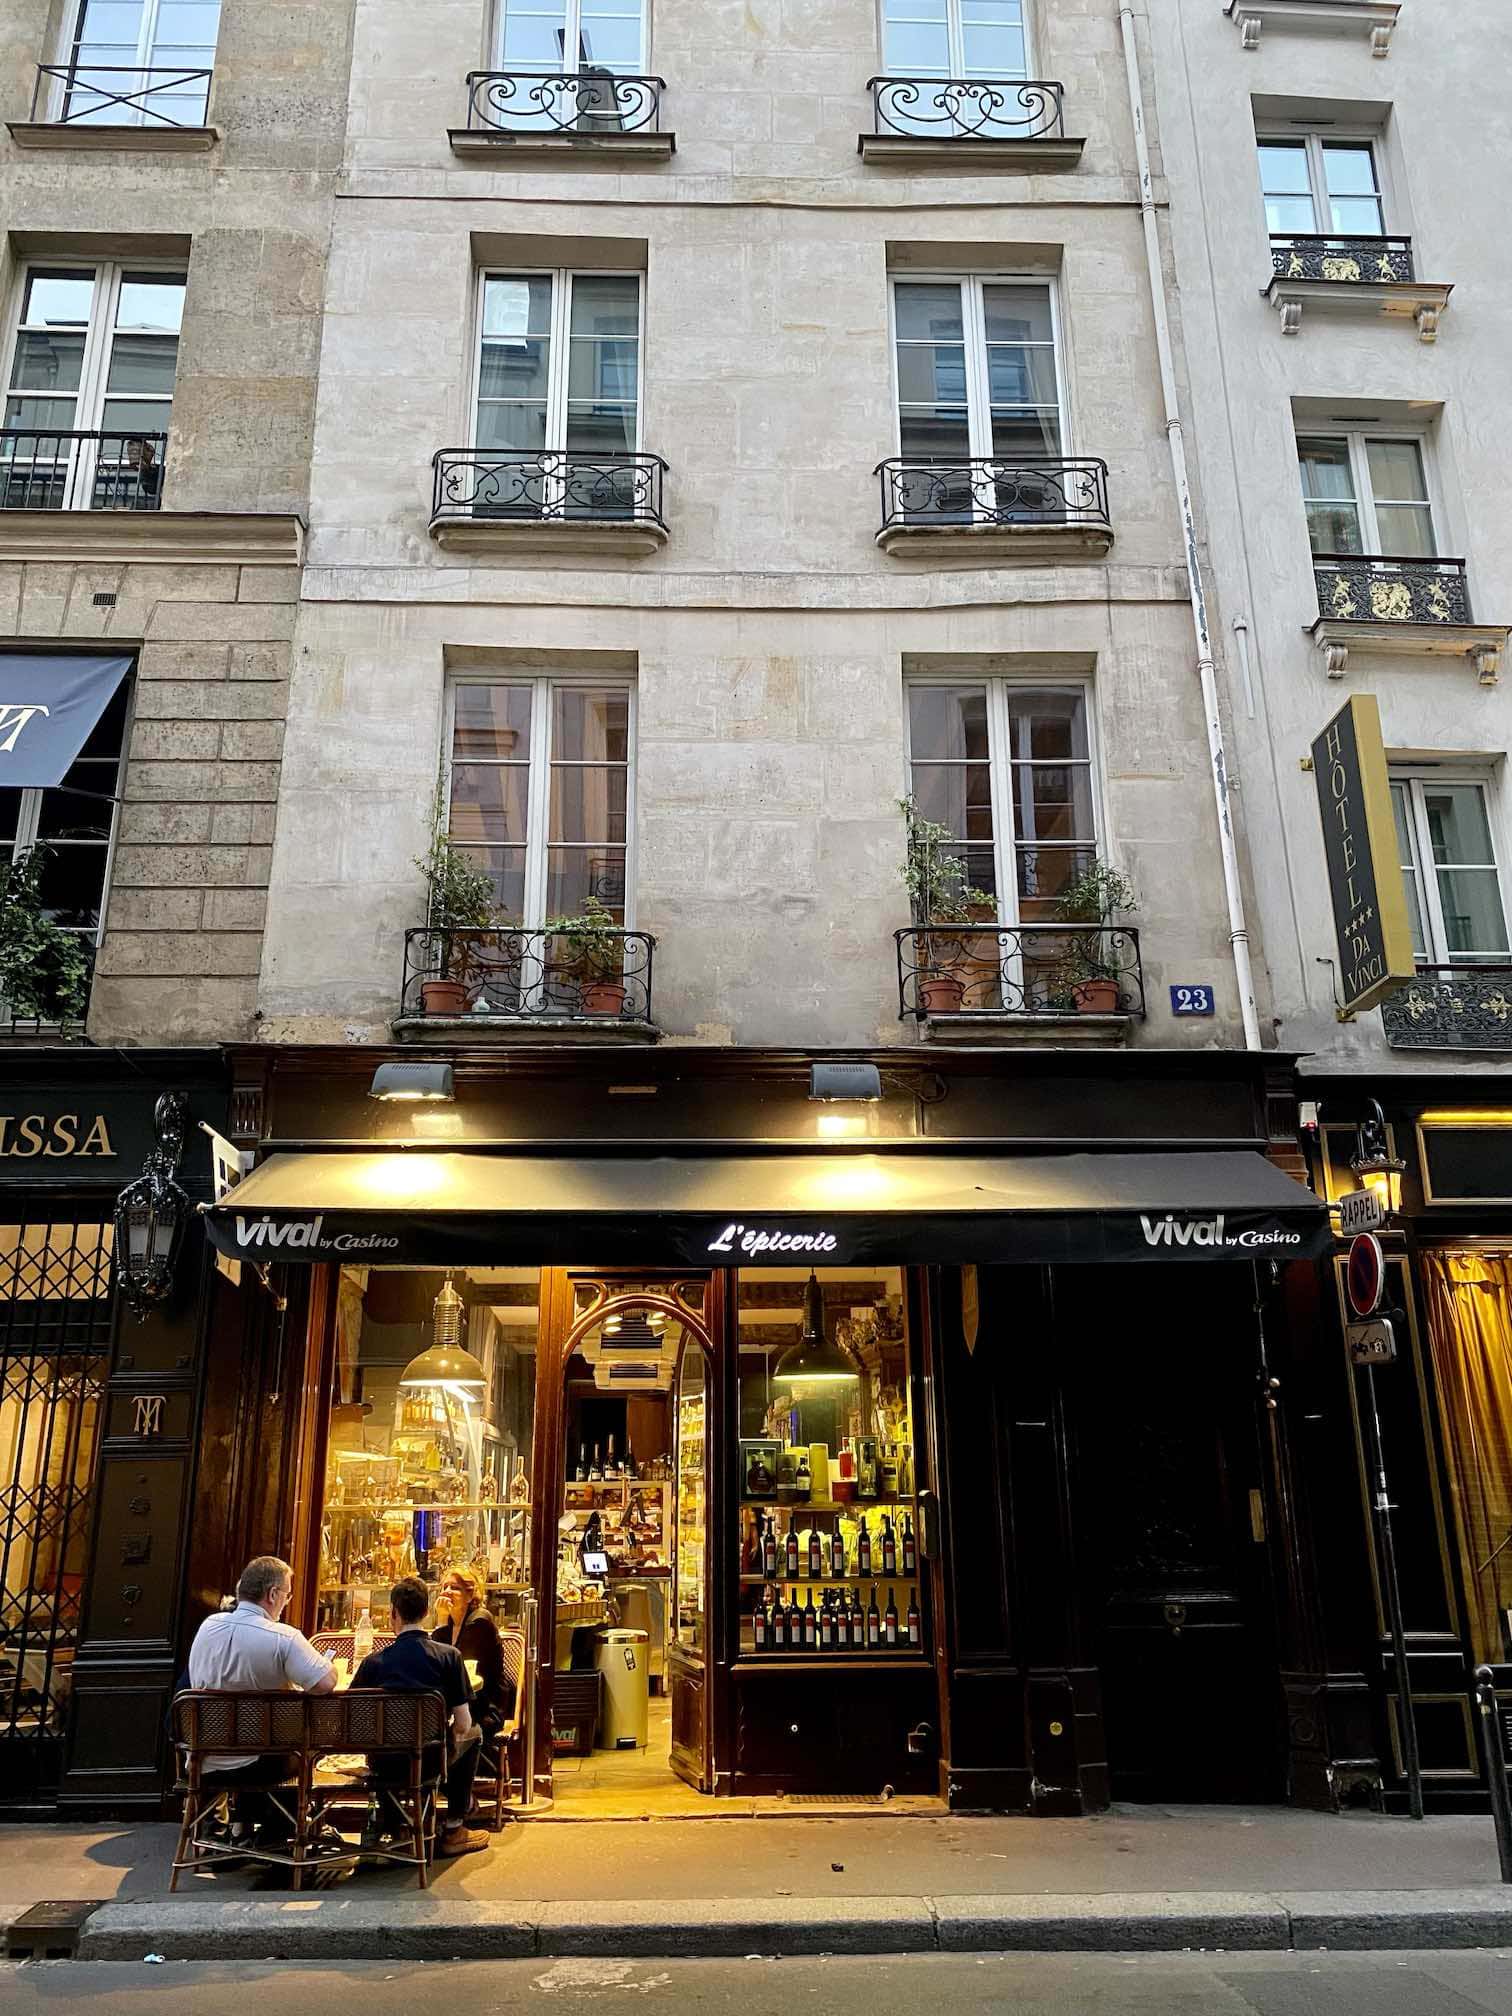 lauer Sommerabend in Paris, Restaurant, vor dem Menschen ein Glas Wein geniessen